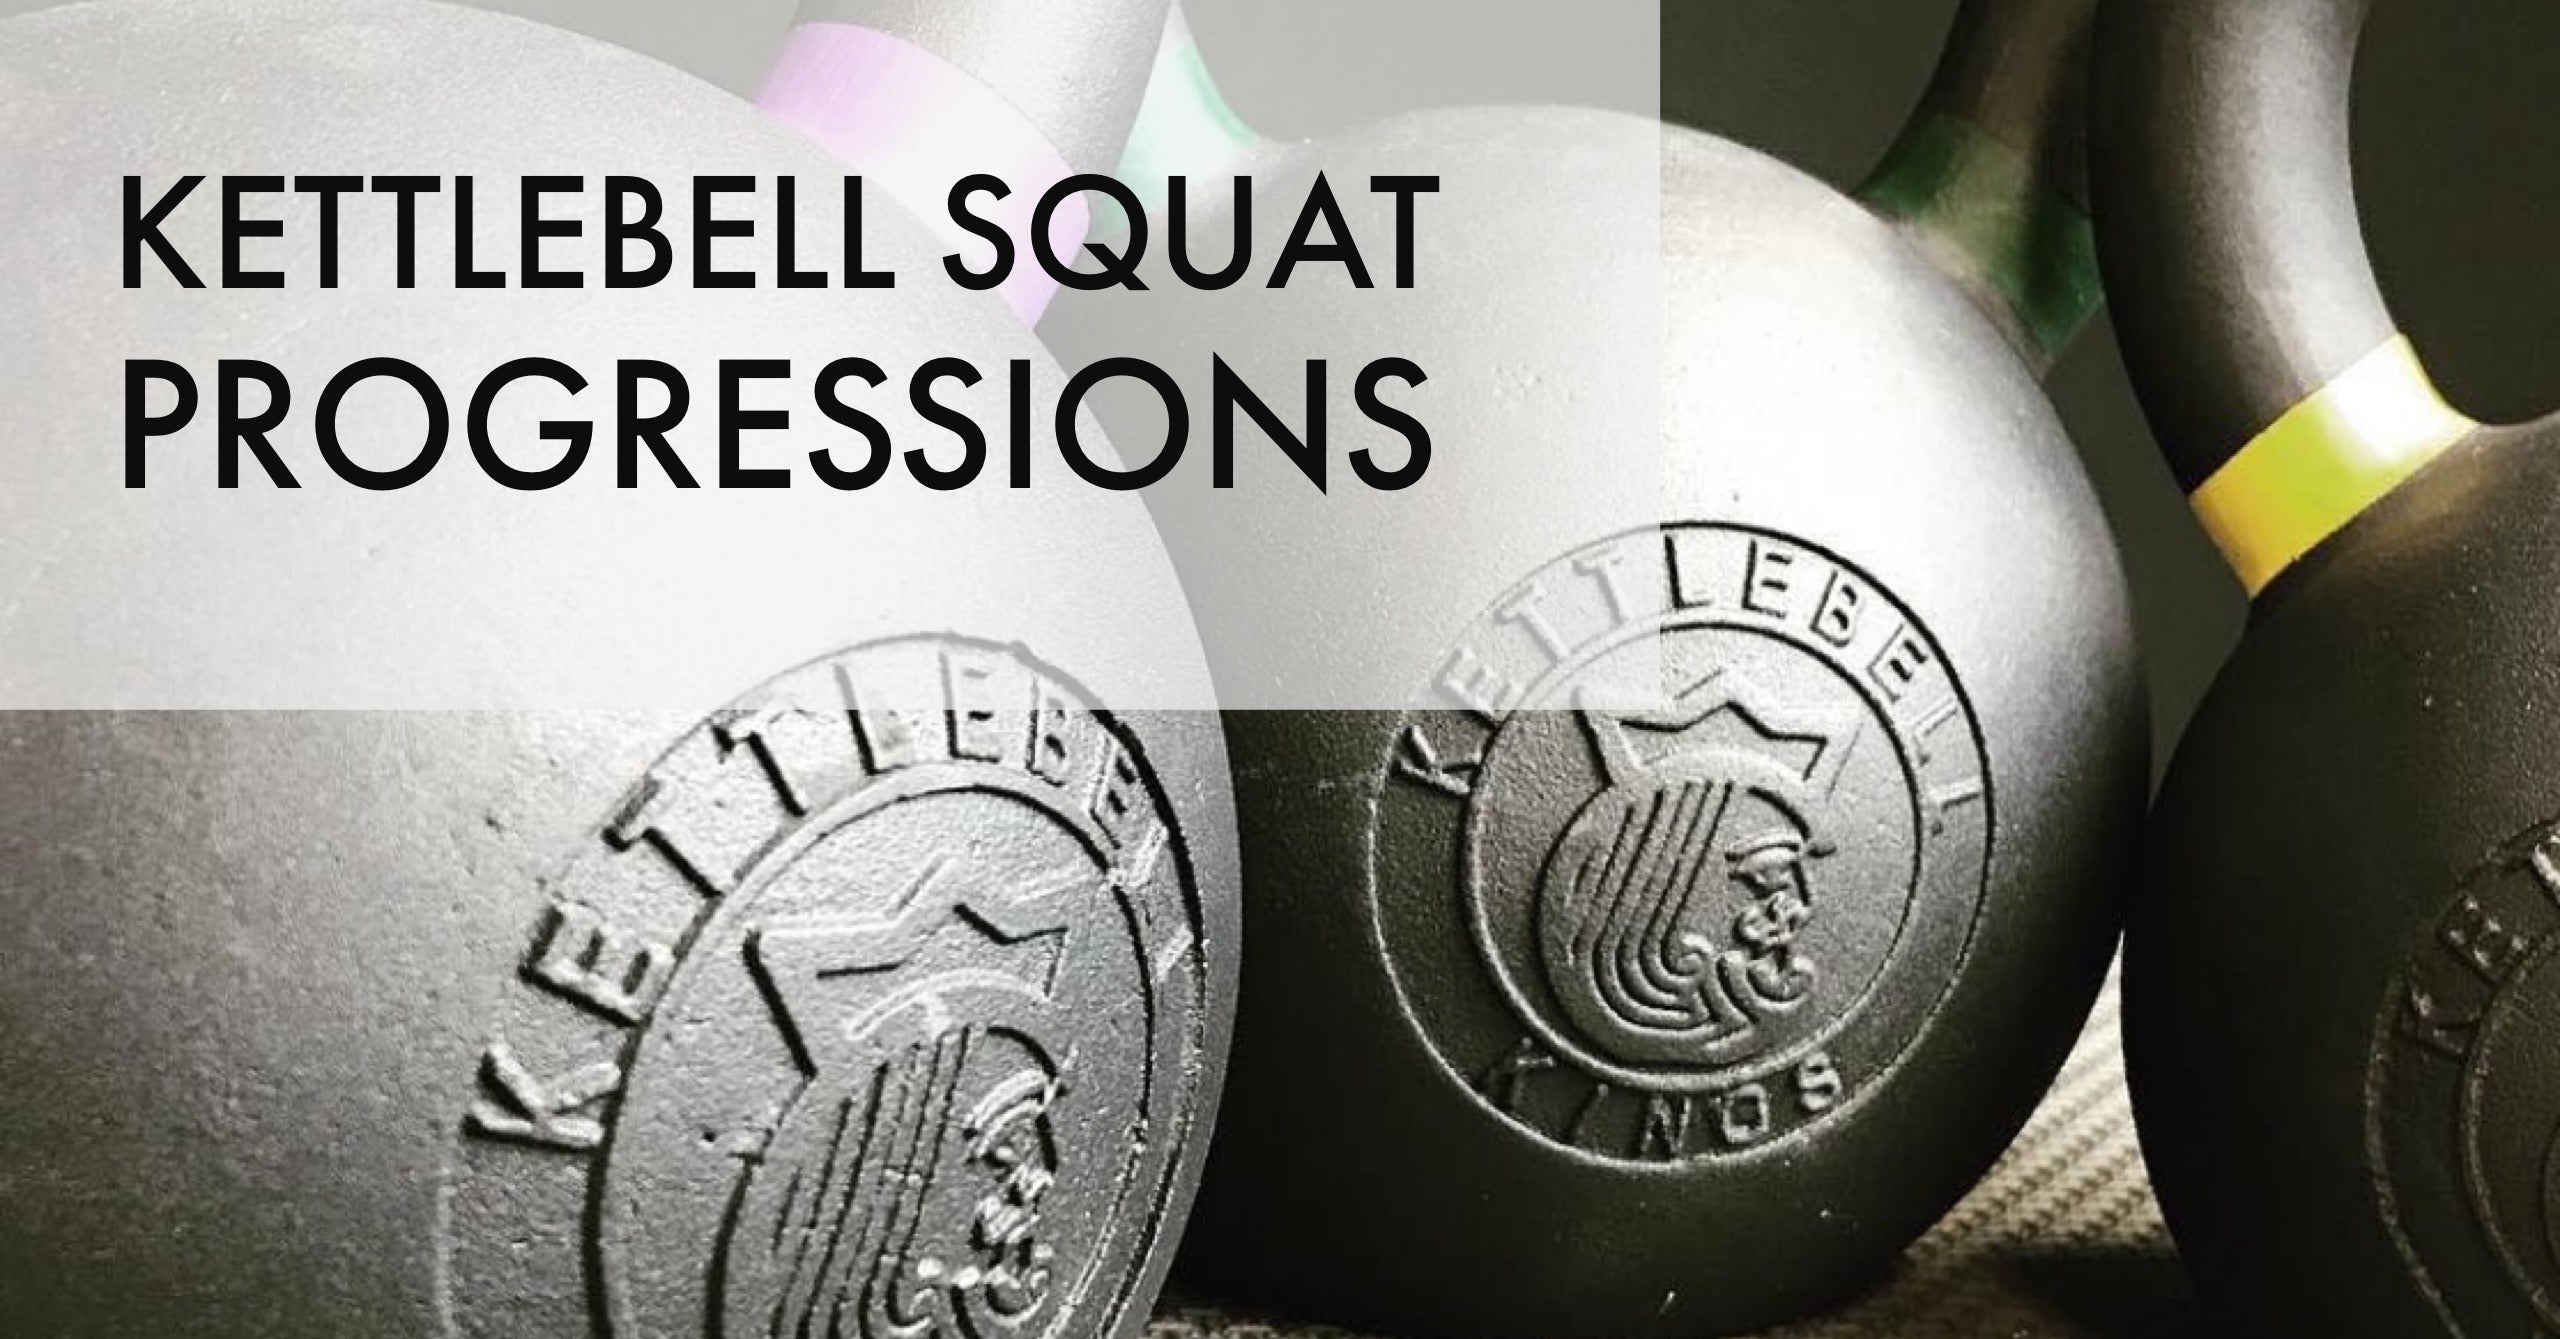 Kettlebell Foundations: Kettlebell Squats